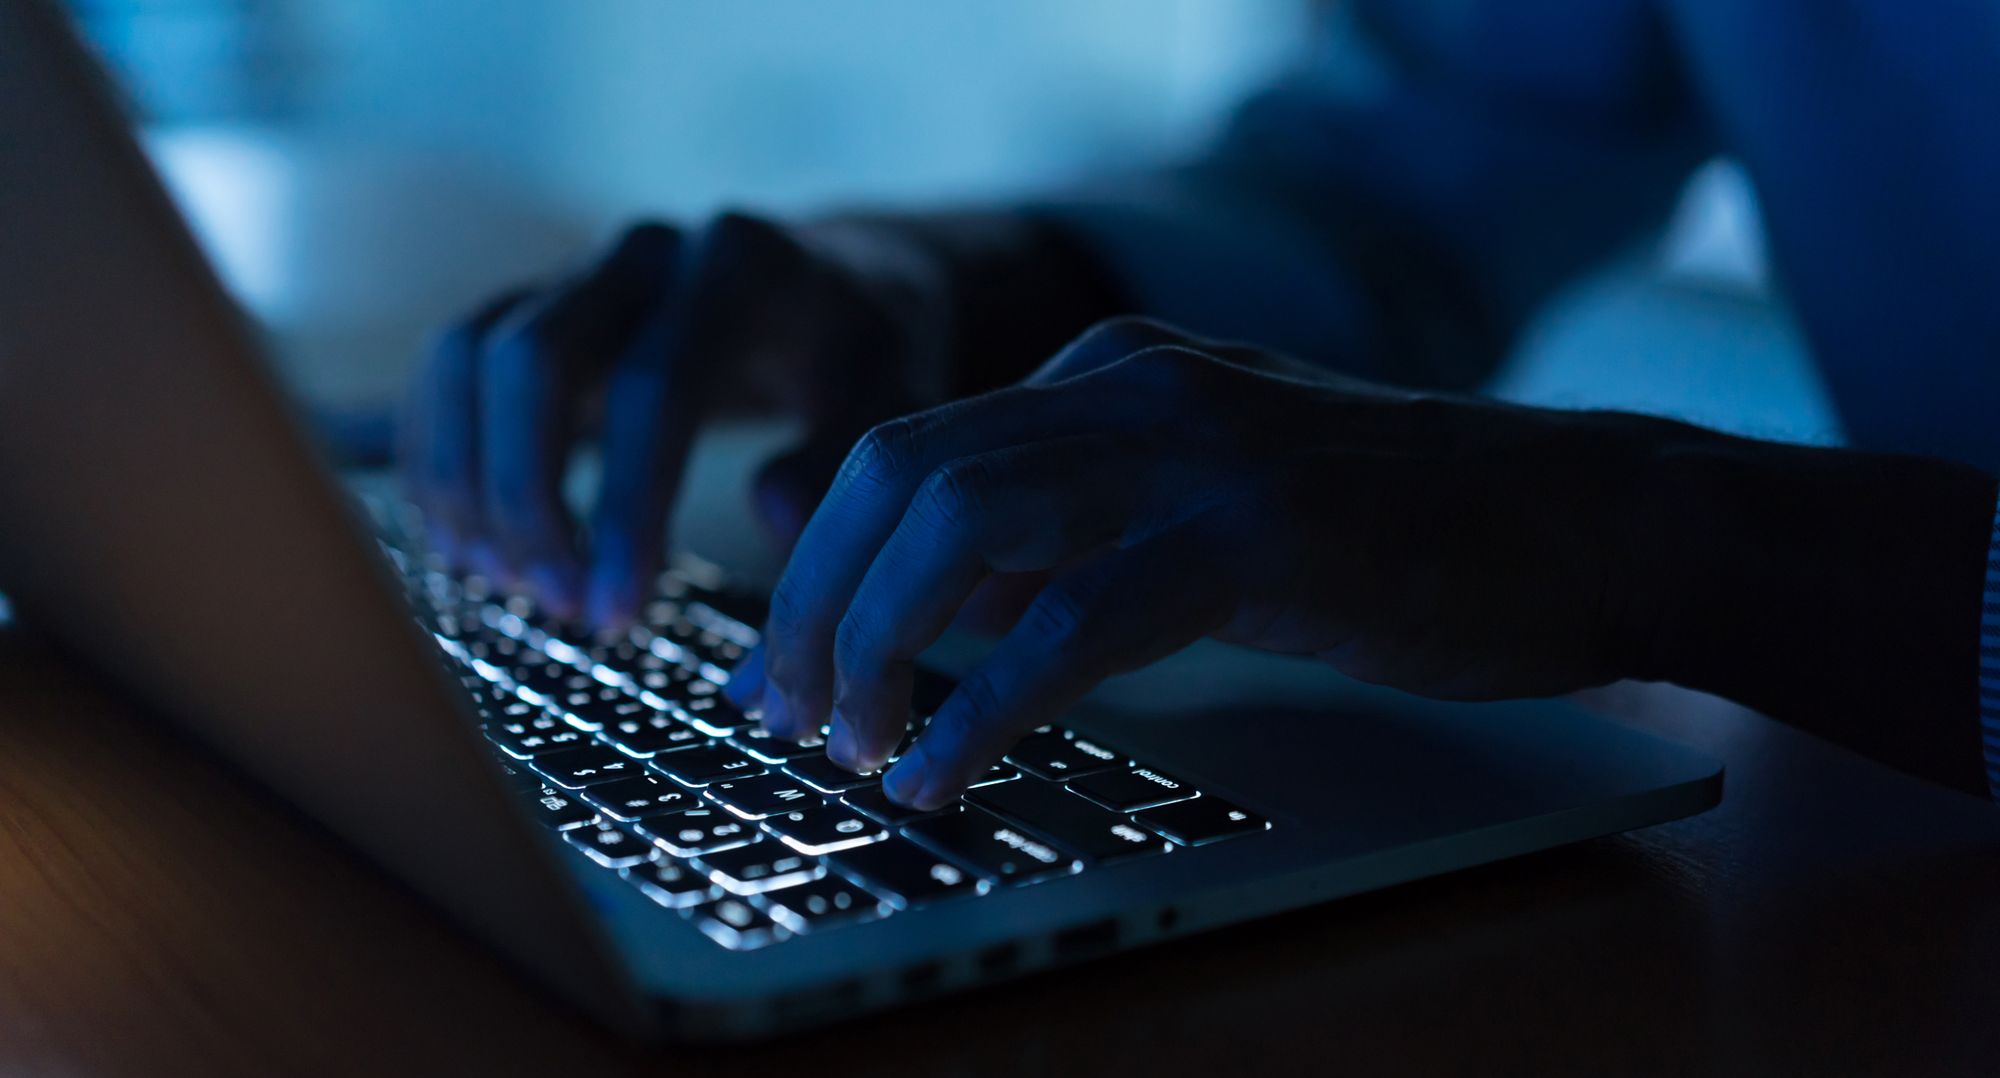 Przestępcy podszywając się pod Zakład Ubezpieczeń Społecznych mogą przejąć kontrolę nad Twoim komputerem